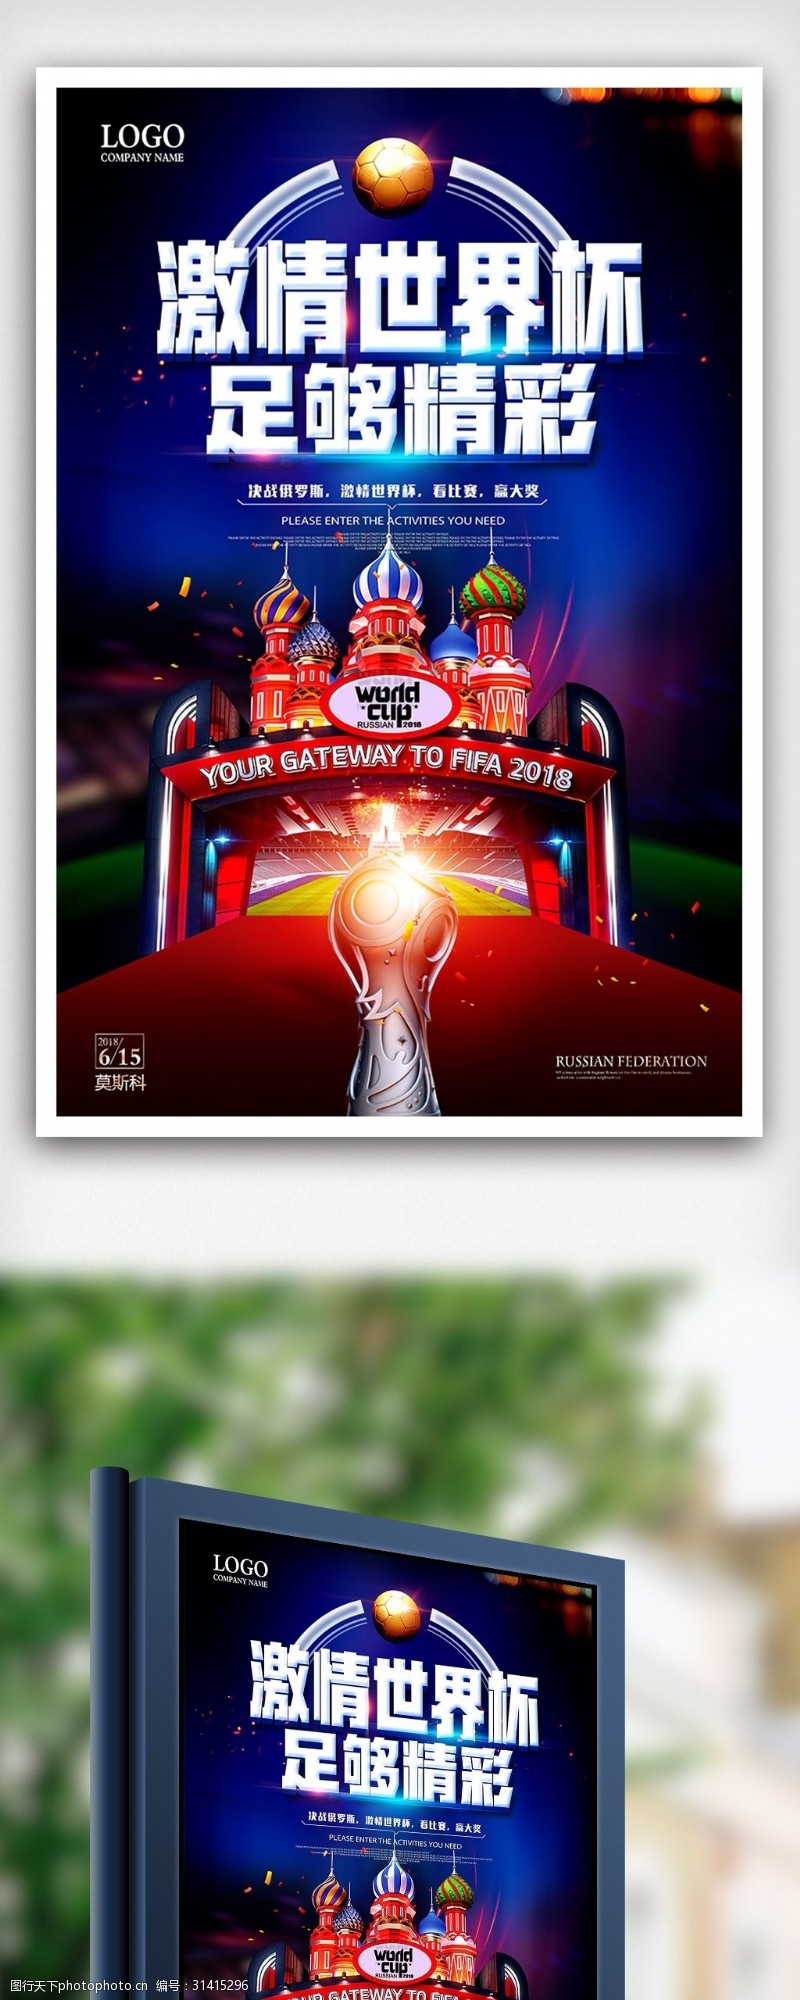 淘宝海报免费下载激情世界杯俄罗斯世界杯足球比赛海报